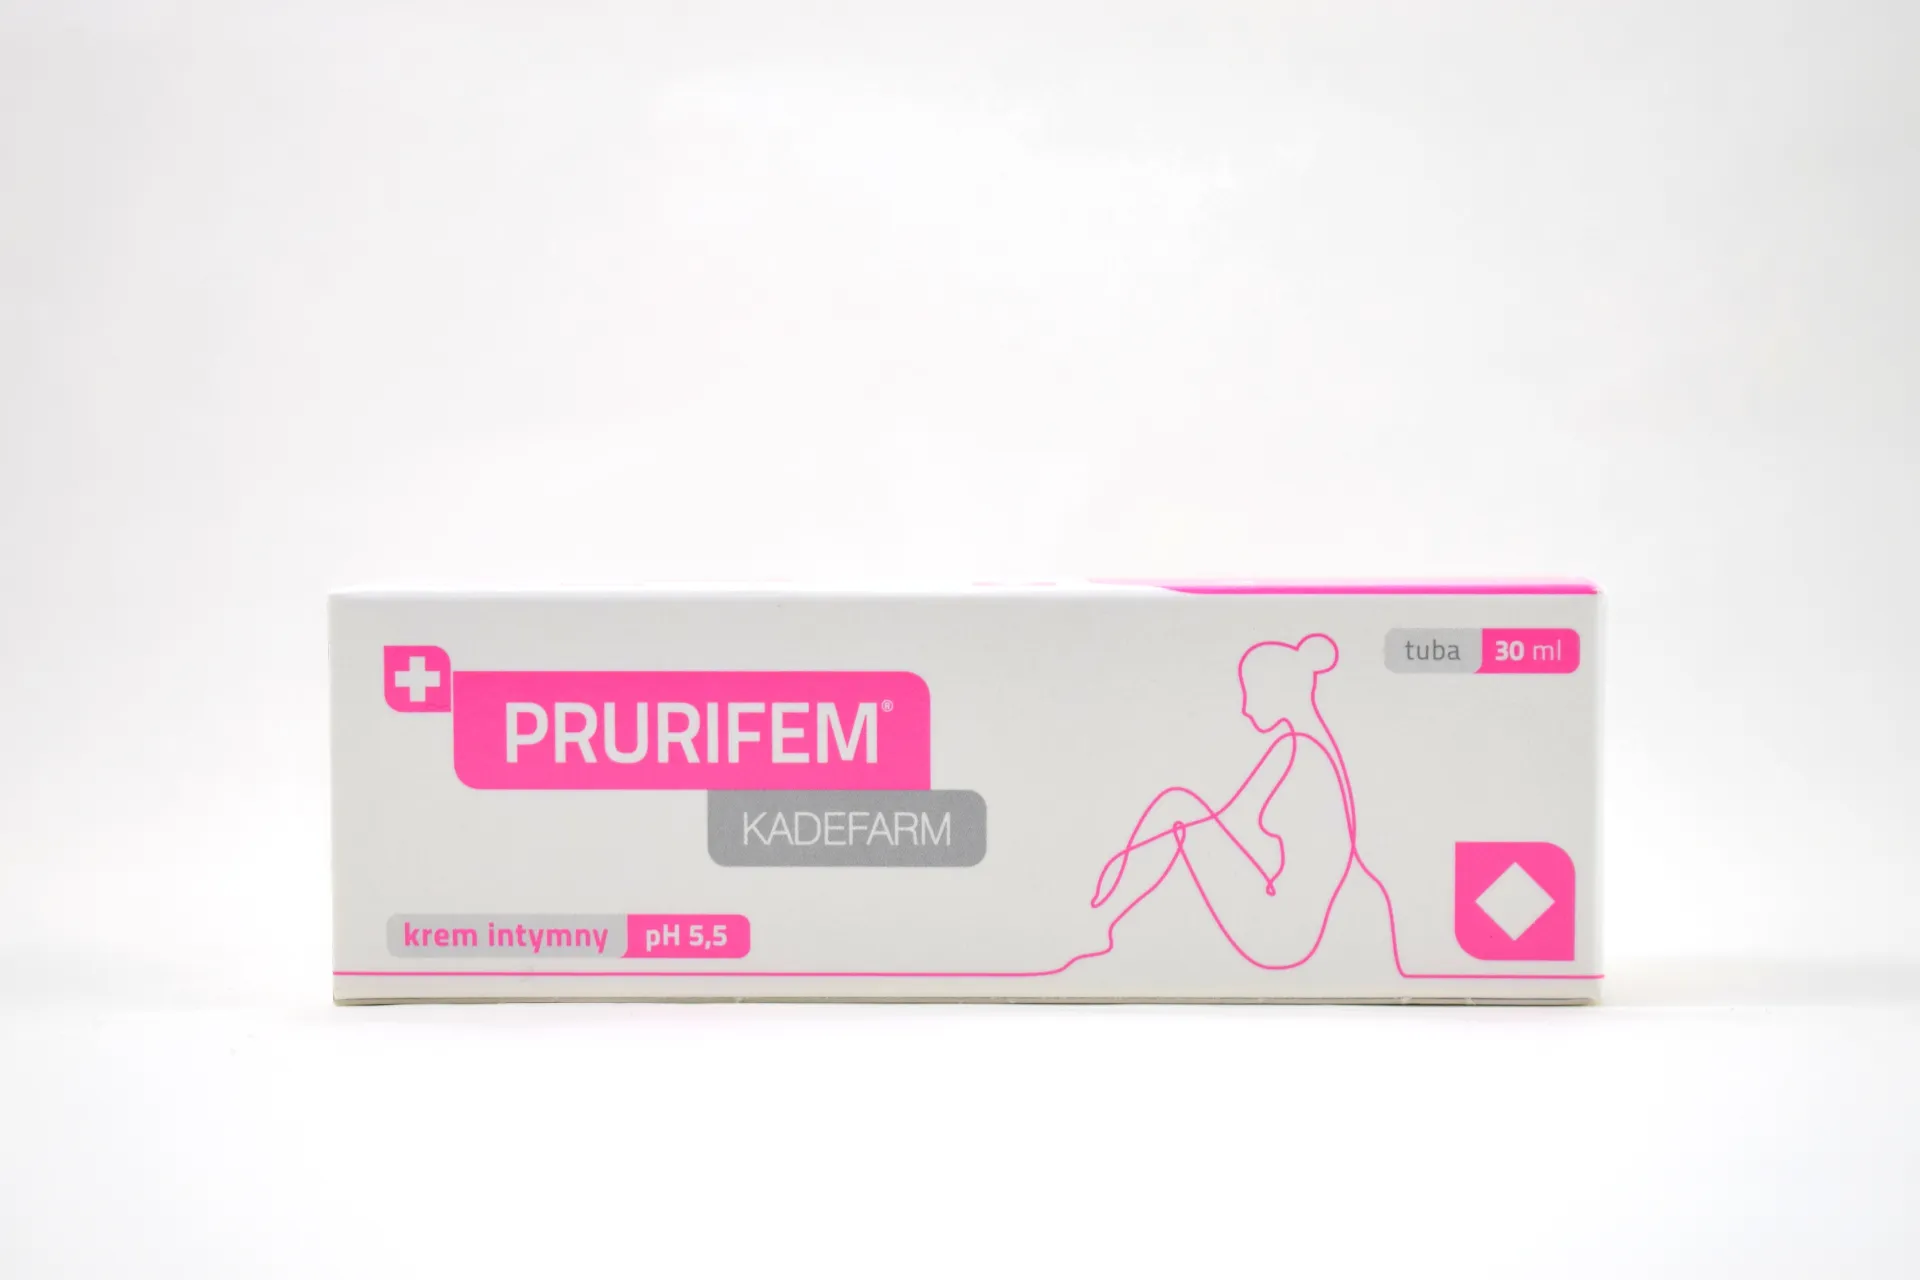 Prurifem Kadefarm, krem intymny, pH 5,5, 30 ml